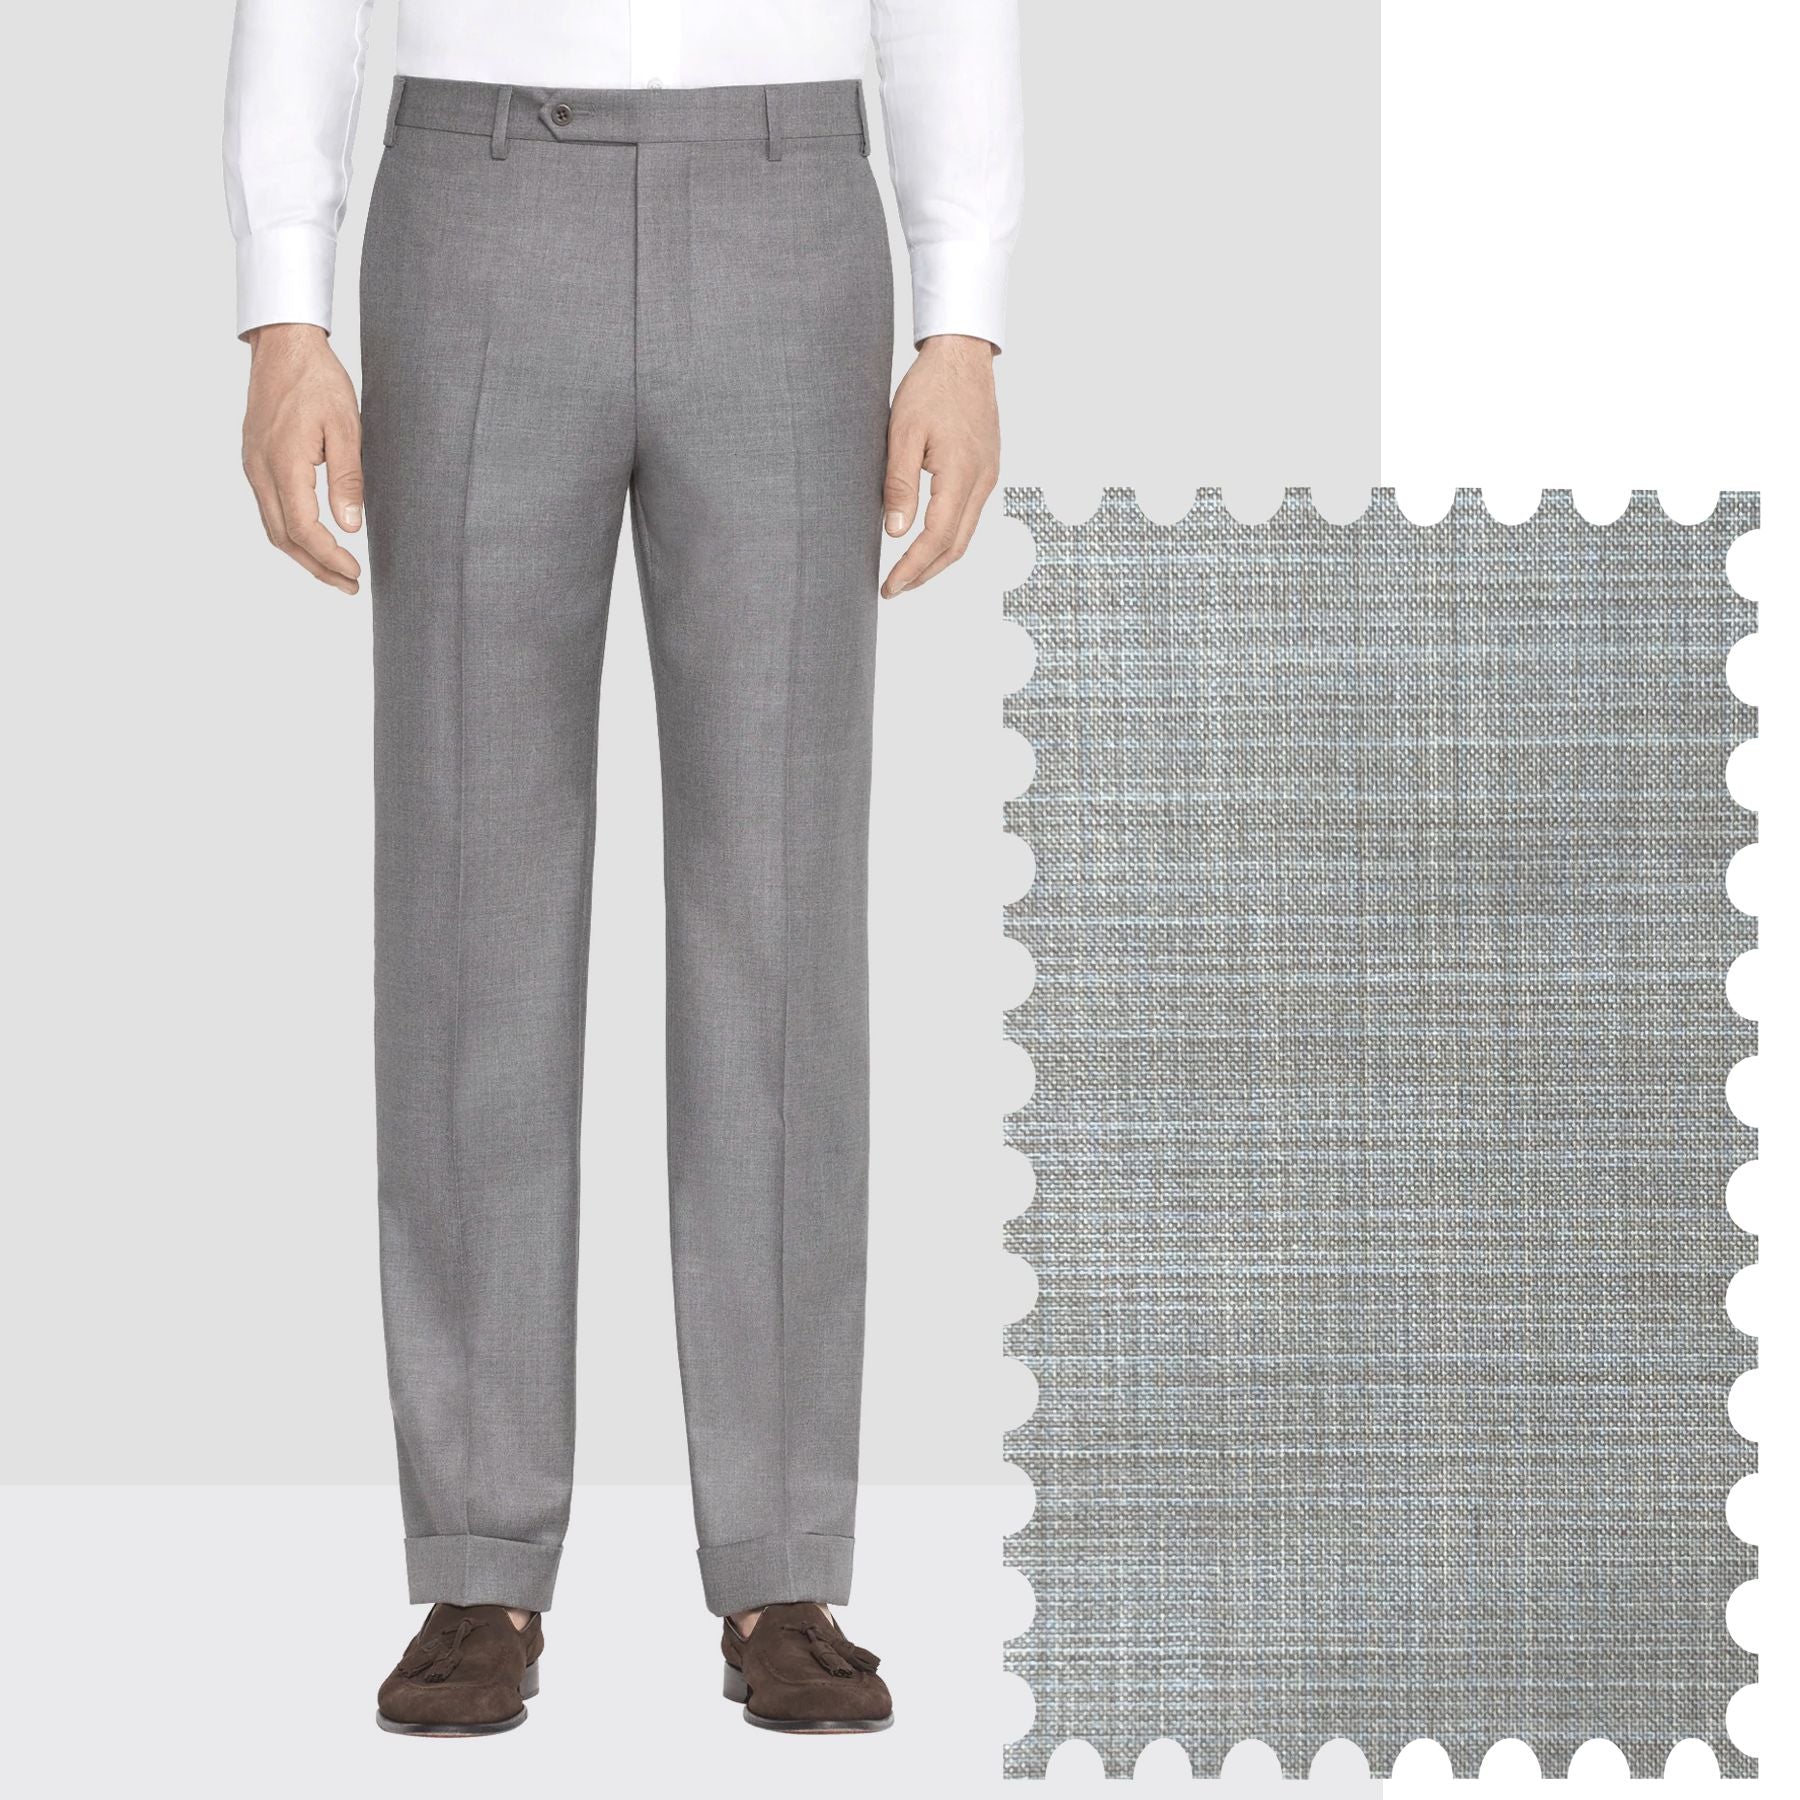 fcity.in - Elanhood Elegant Fashionista Men Trousers / Fancy Modern Men  Trousers